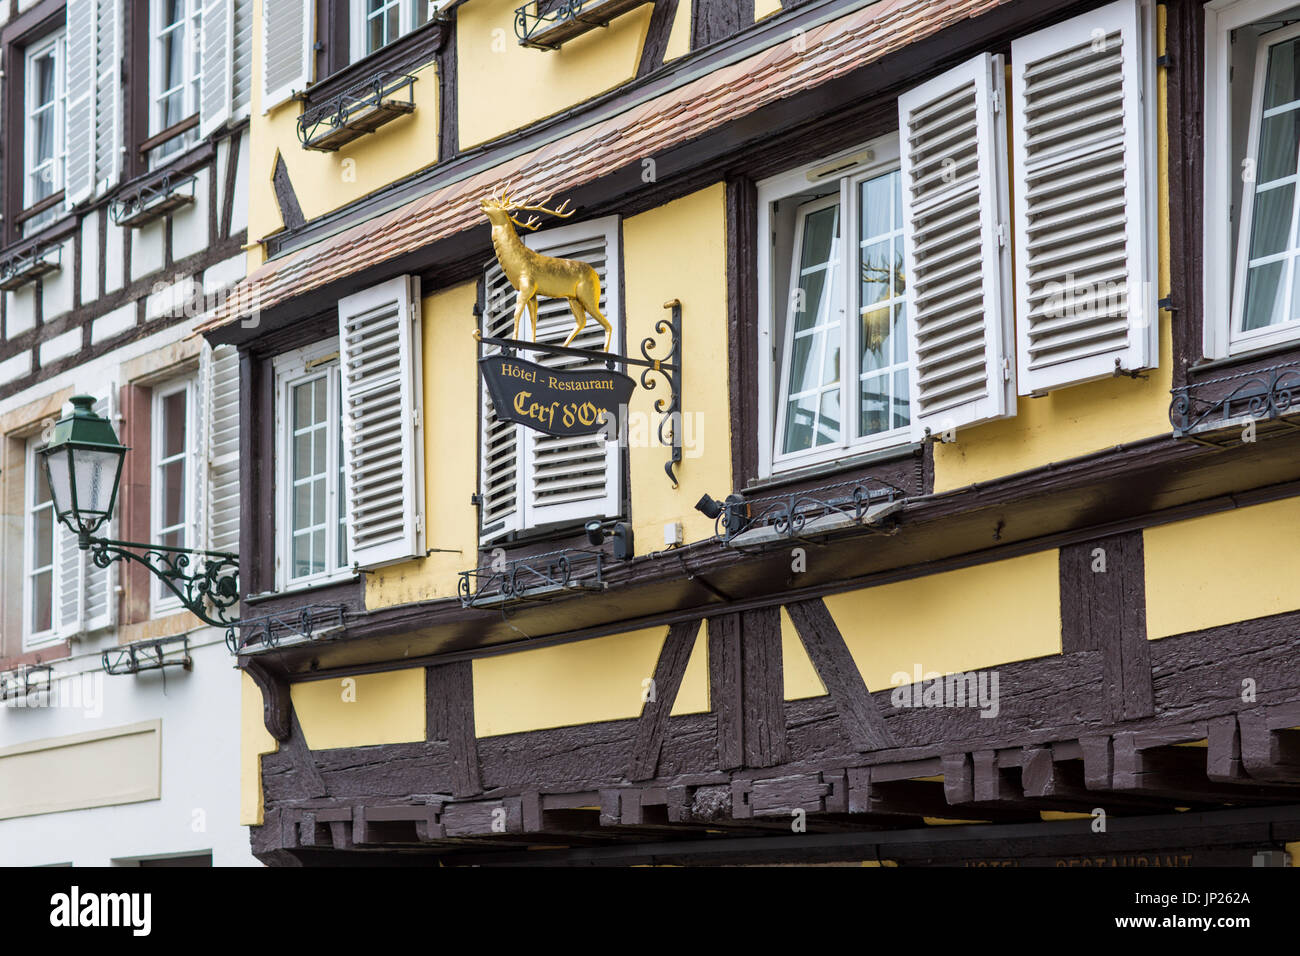 Strasburgo, Alsazia, Francia - 3 Maggio 2014: Hotel Cerf d'Or, tipica Francone edificio dell'Alsazia a Strasburgo. Strasburgo è la capitale della Grande Regione Est (ex Alsazia) della Francia e la sede ufficiale dell'Unione europea. Foto Stock